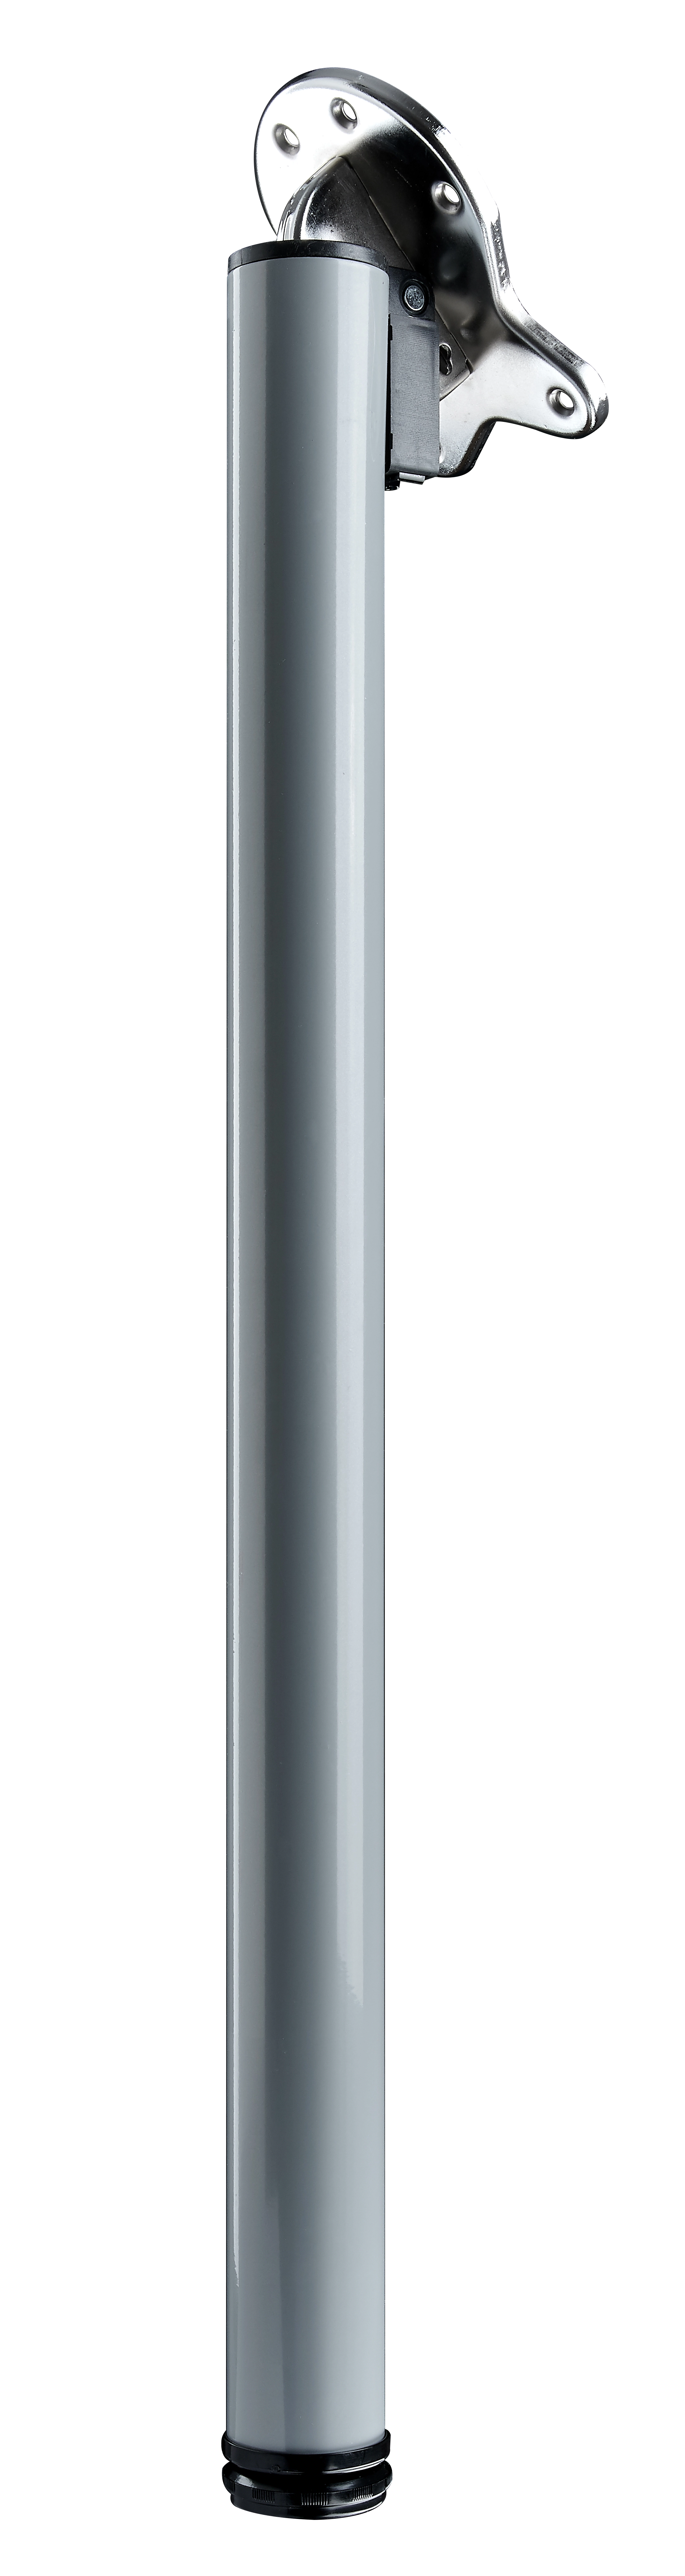 Hettich Klapp-Tischbein Ø 50 mm x 710 mm Silber kaufen bei OBI